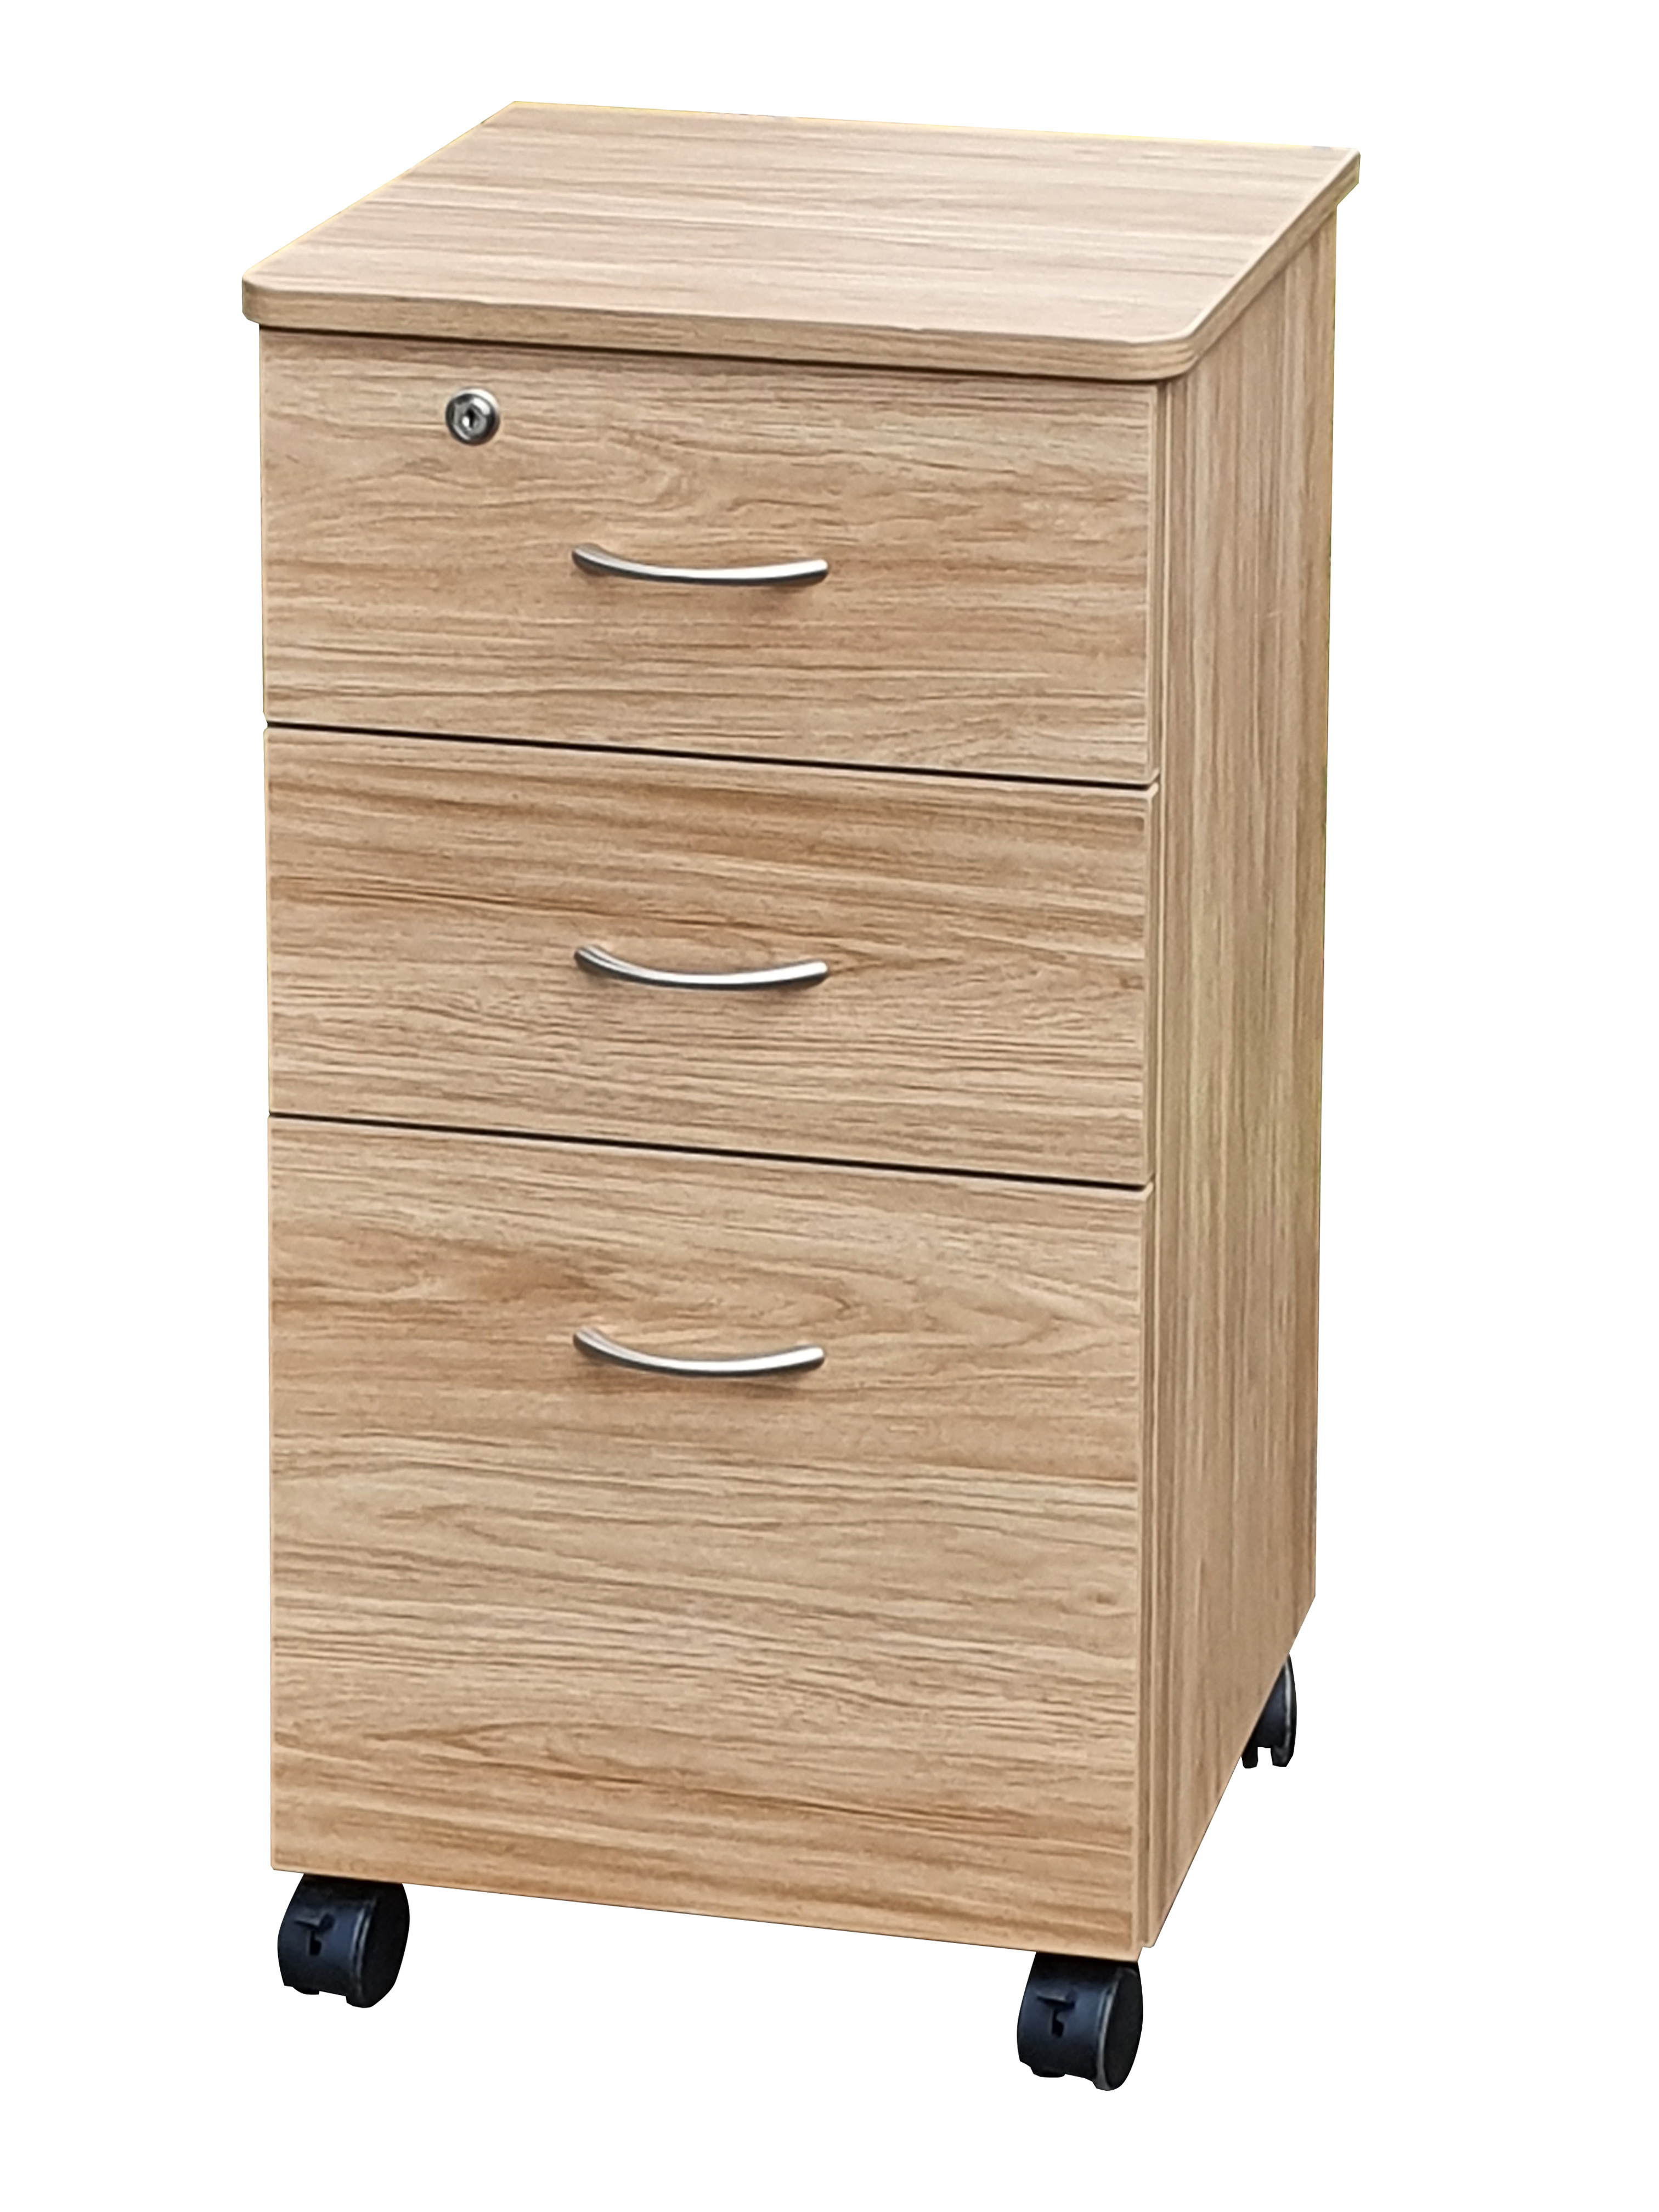 Denby 3 Drawer Bedside Locker Agedcare & Healthcare Furniture